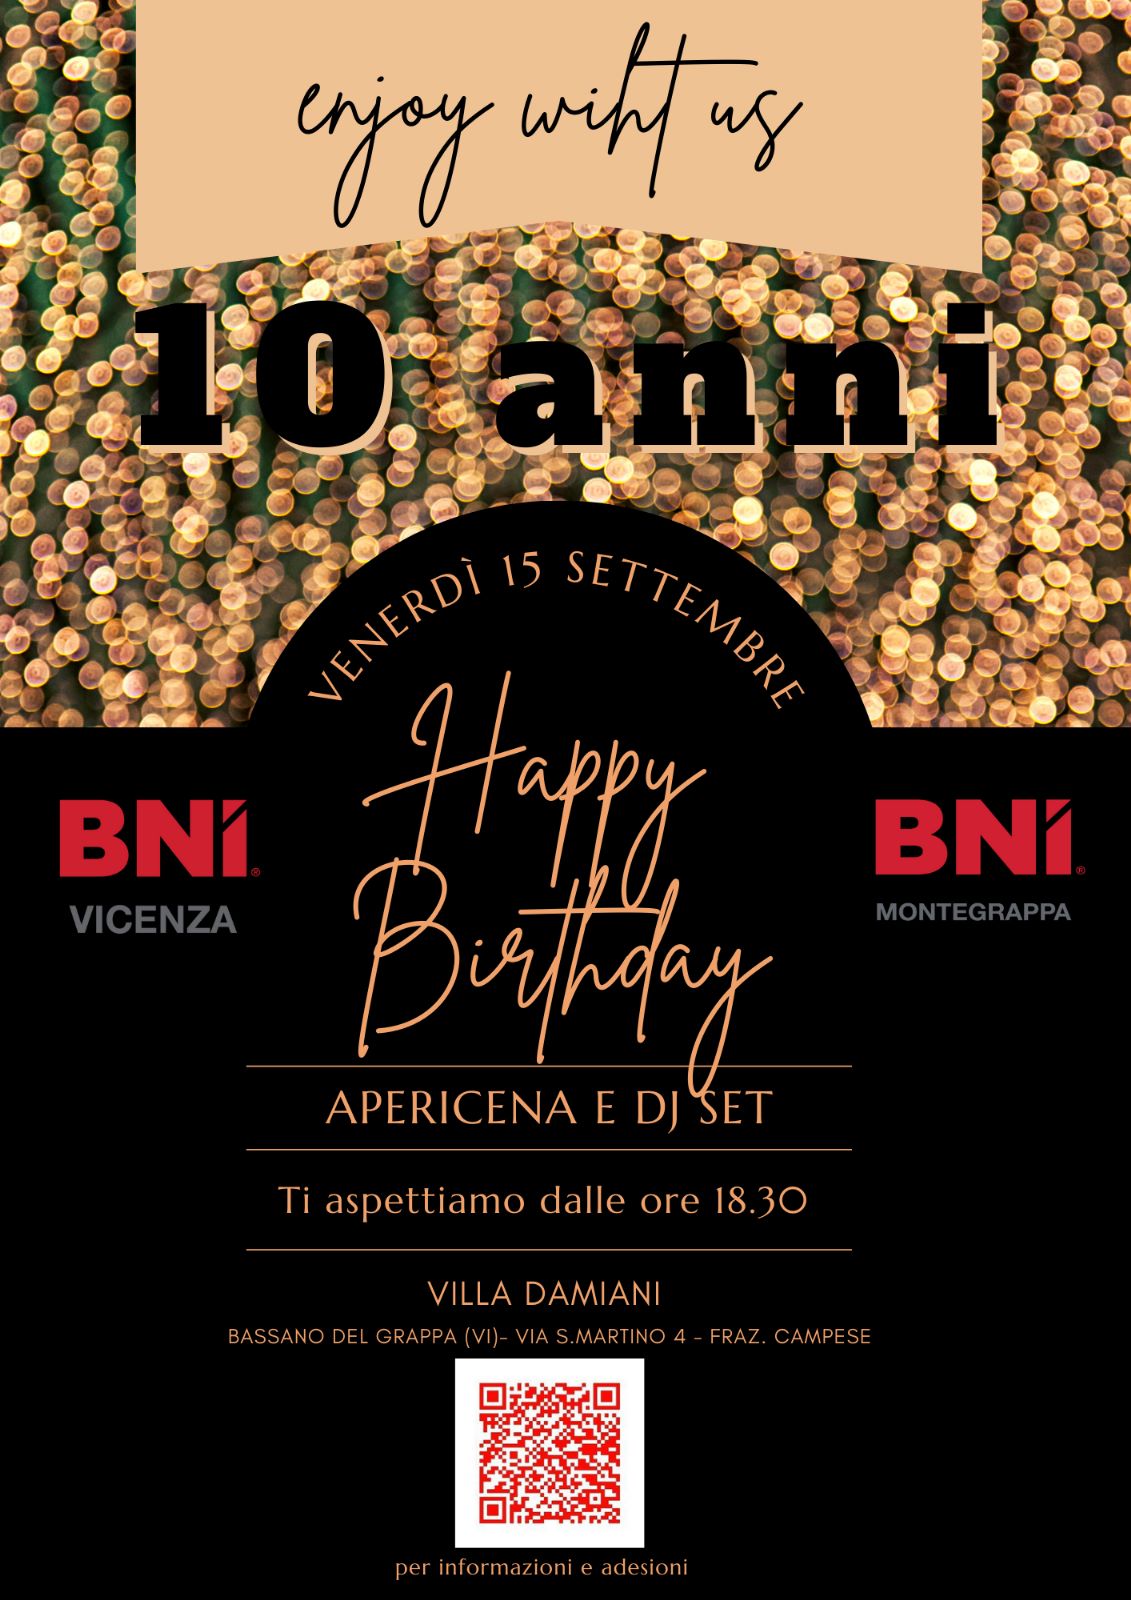 Happy Birthday BNI Montegrappa Happy Birthday BNI Vicenza